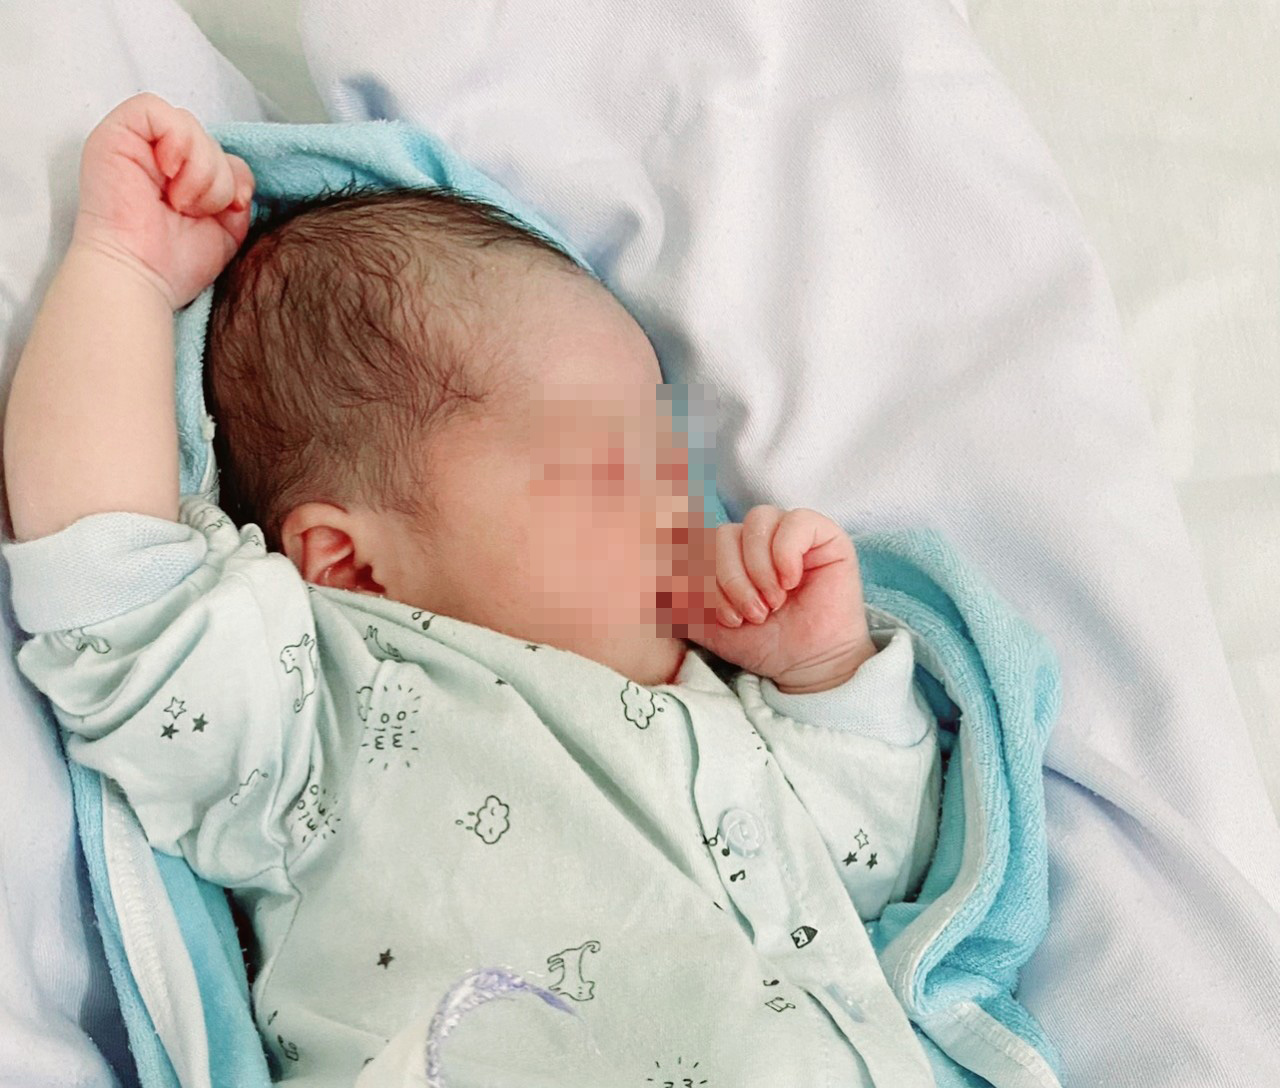 Em bé thứ 6 chào đời từ người mẹ mắc Covid-19 tại BV Bệnh Nhiệt đới Trung ương - Ảnh 1.